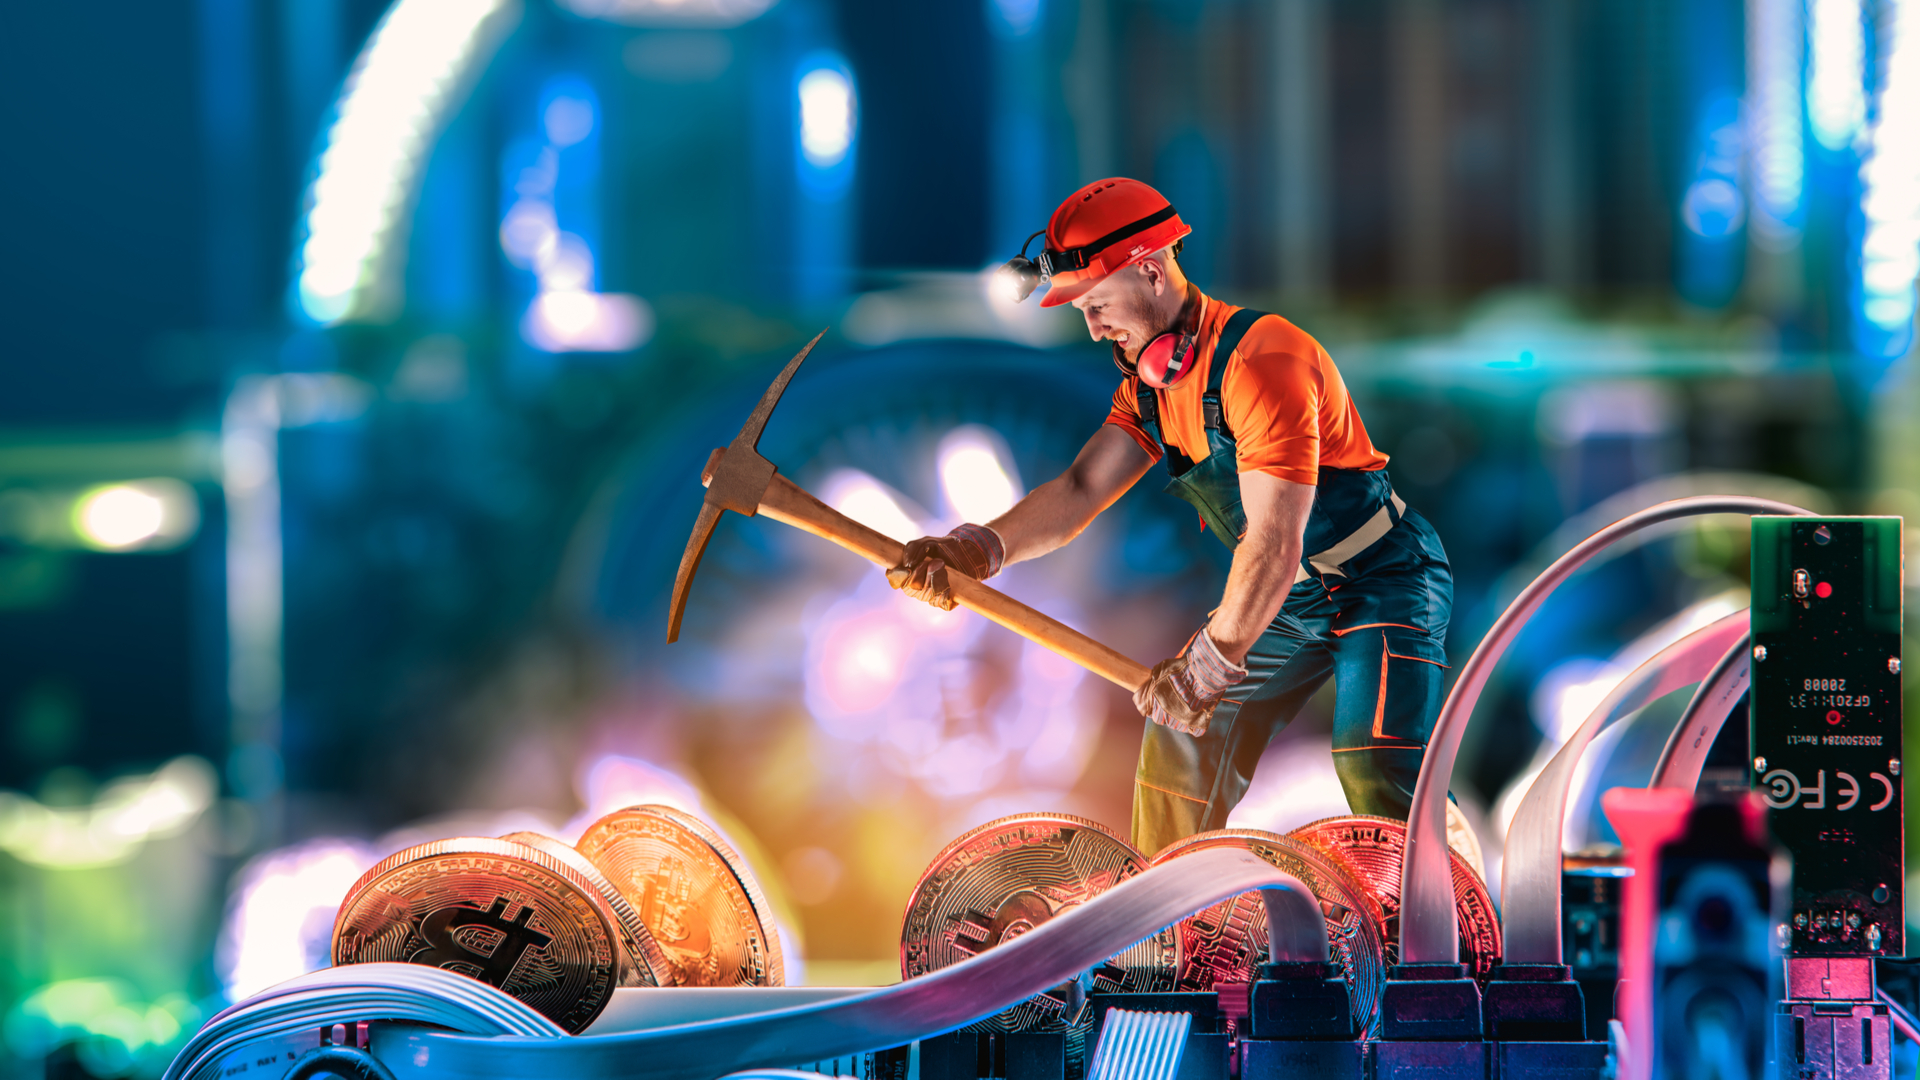 Gambar representasional yang menggambarkan seorang pekerja tambang bekerja keras untuk menambang cryptocurrency